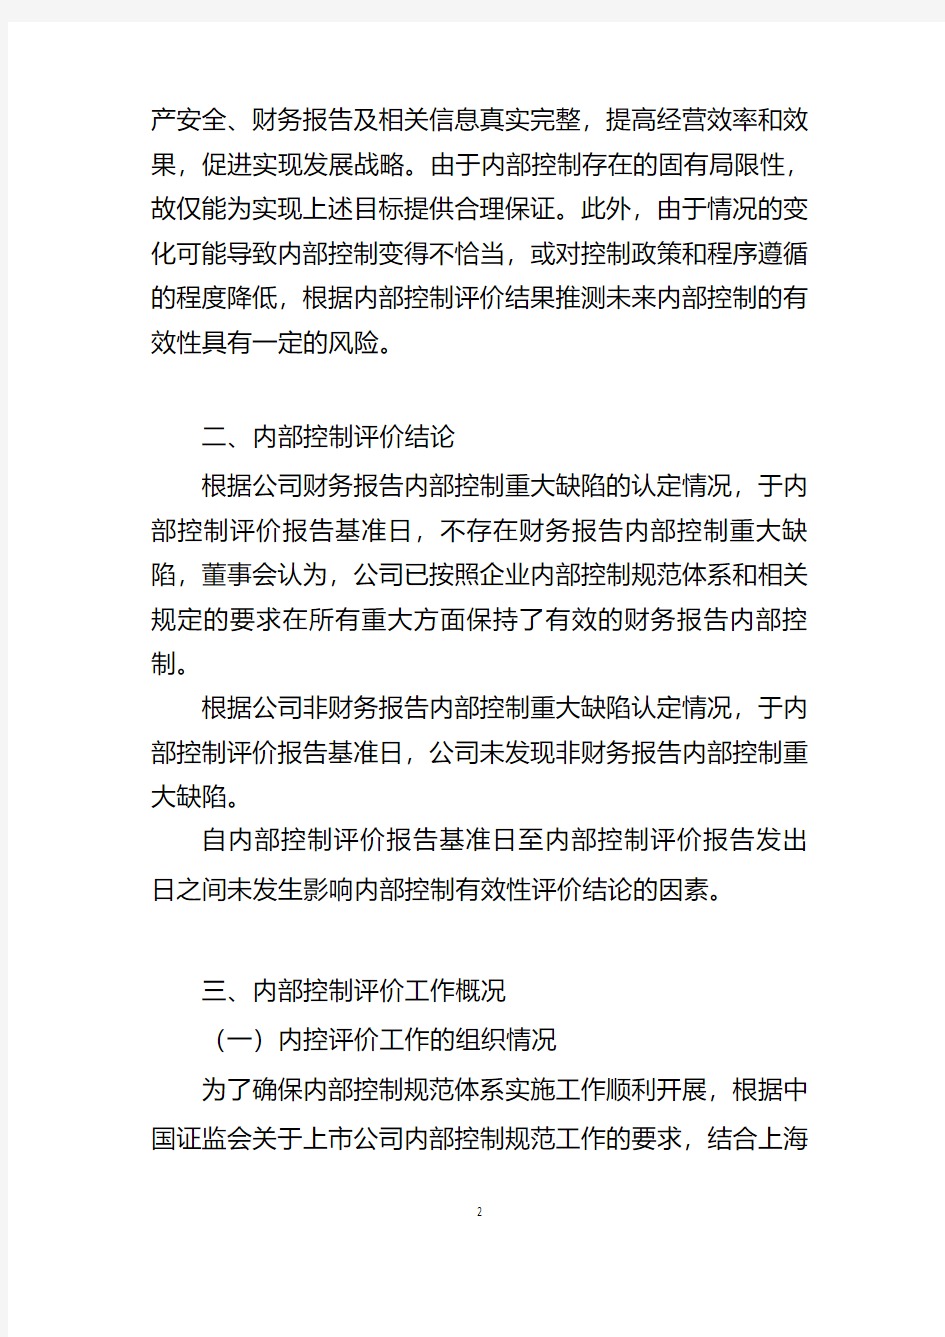 上海振华重工(集团)股份有限公司2014年度内部控制评价